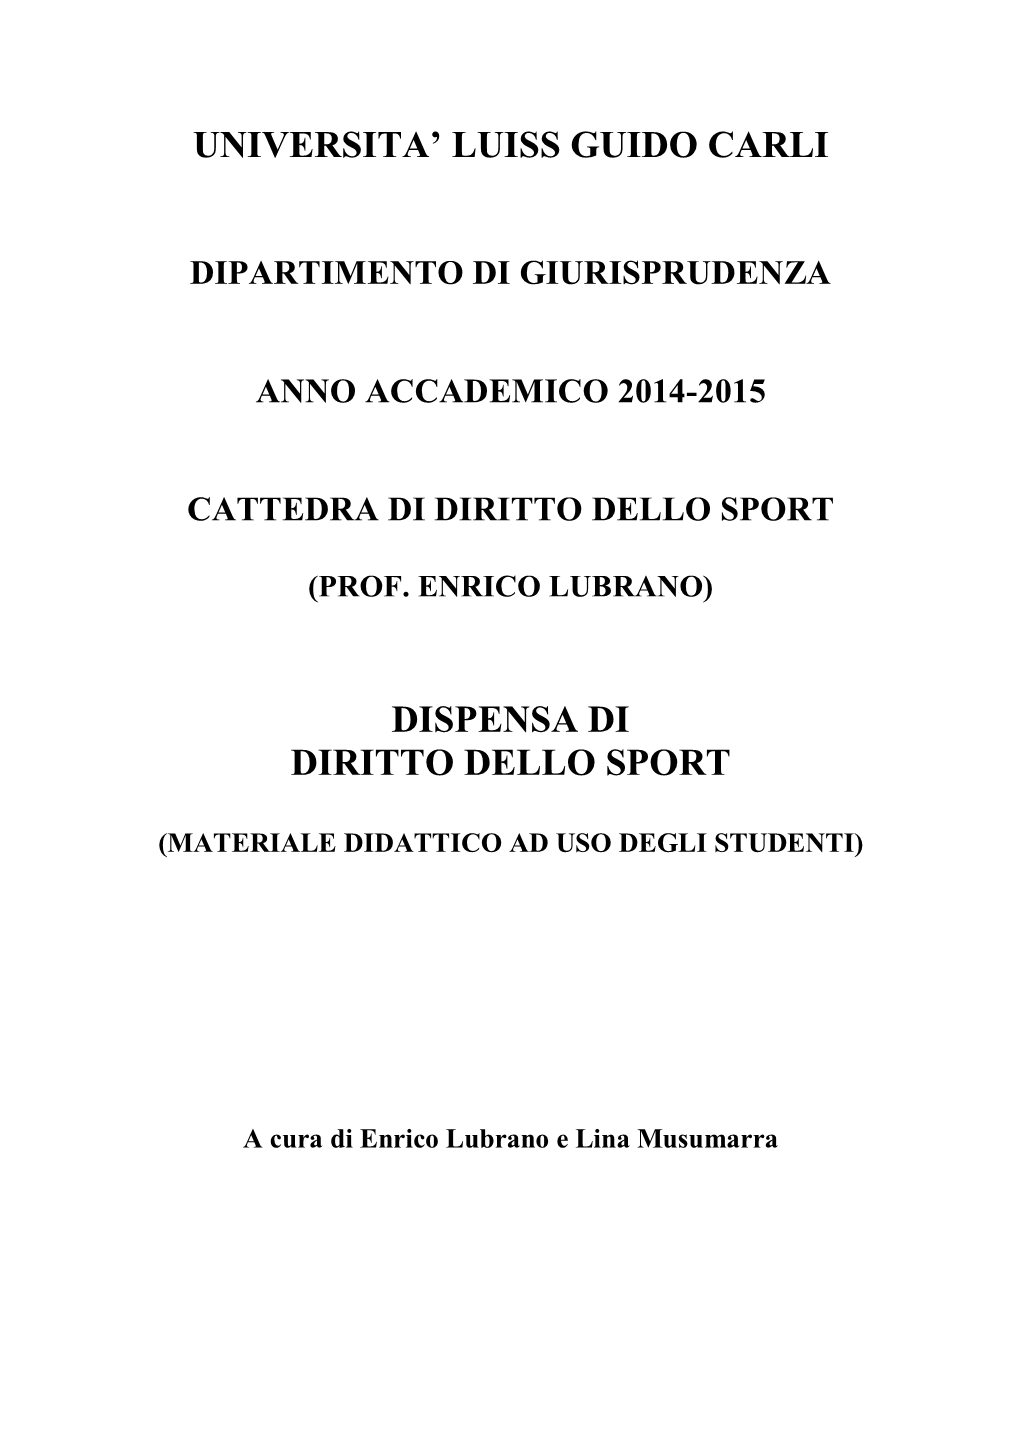 Diritto Dello Sport 2014-2015 – Dispensa